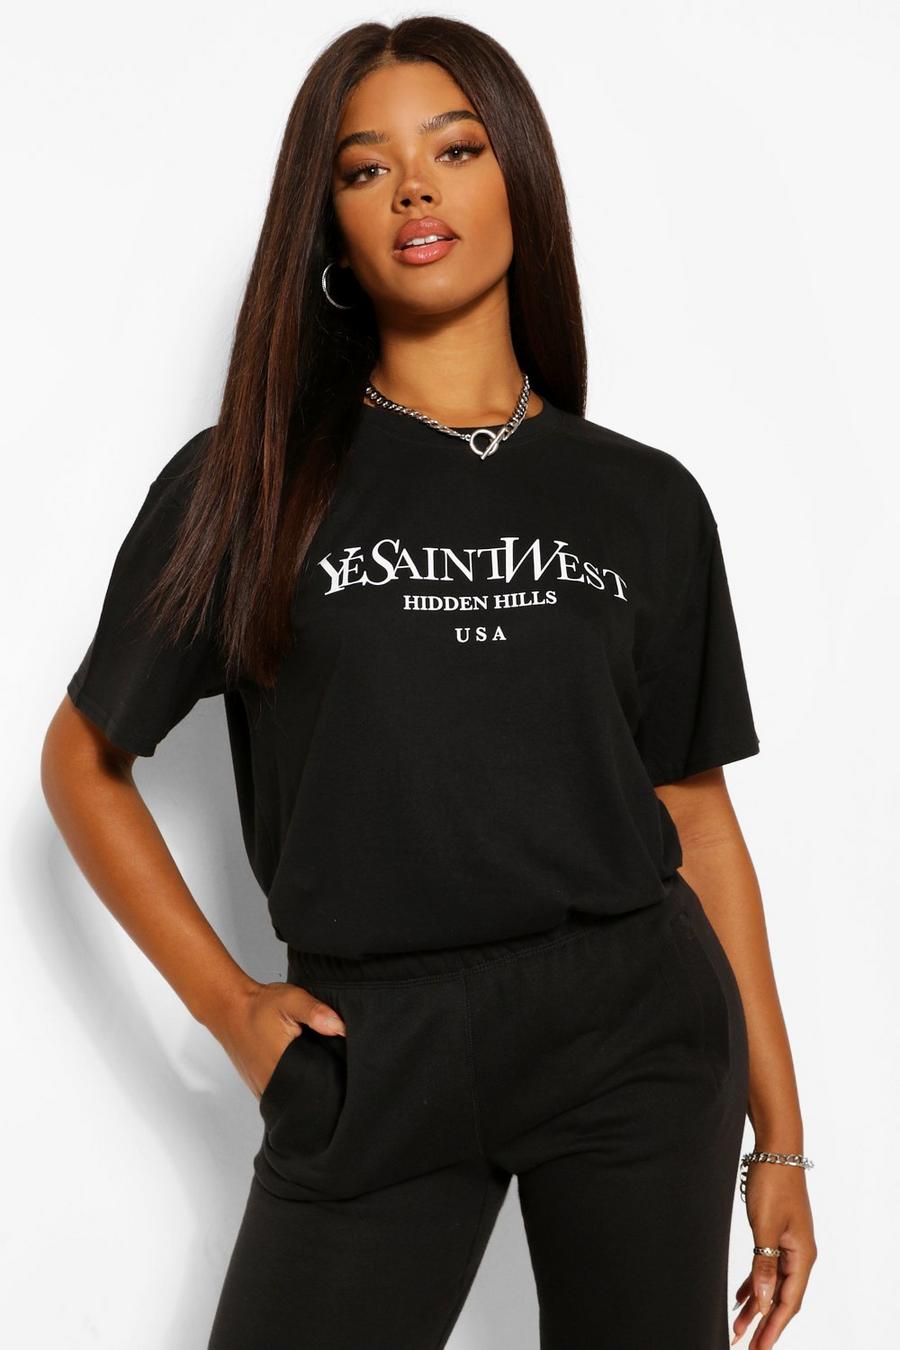 T-shirt oversize 'Ye Saint West', Black